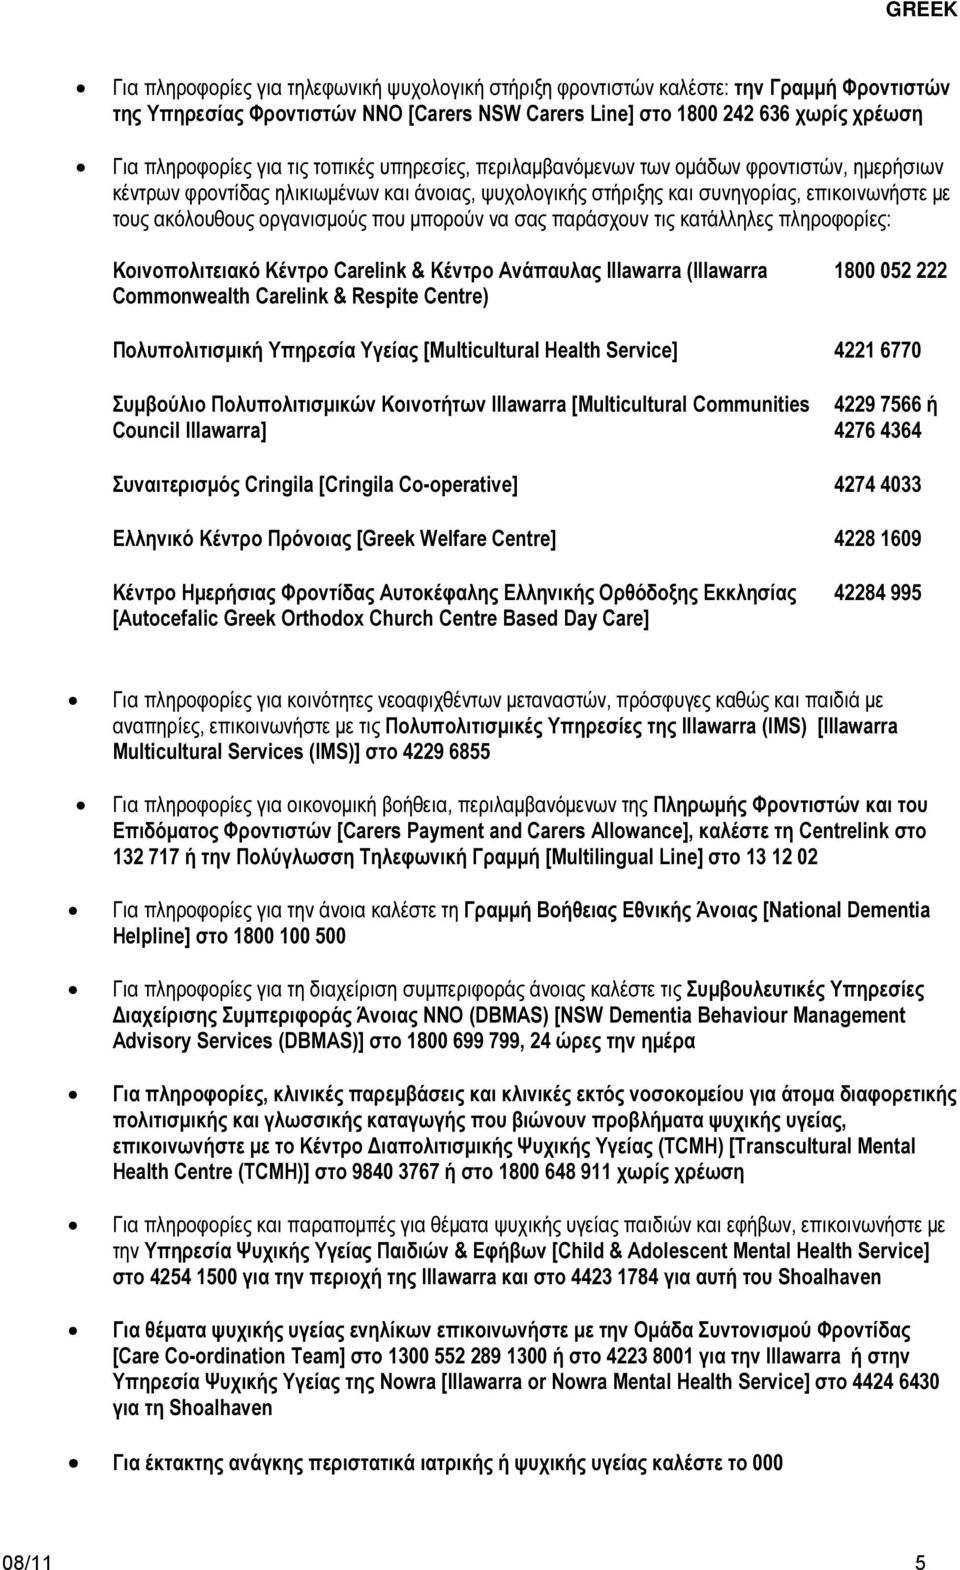 µπορούν να σας παράσχουν τις κατάλληλες πληροφορίες: Κοινοπολιτειακό Κέντρο Carelink & Κέντρο Ανάπαυλας Illawarra (Illawarra Commonwealth Carelink & Respite Centre) 1800 052 222 Πολυπολιτισµική